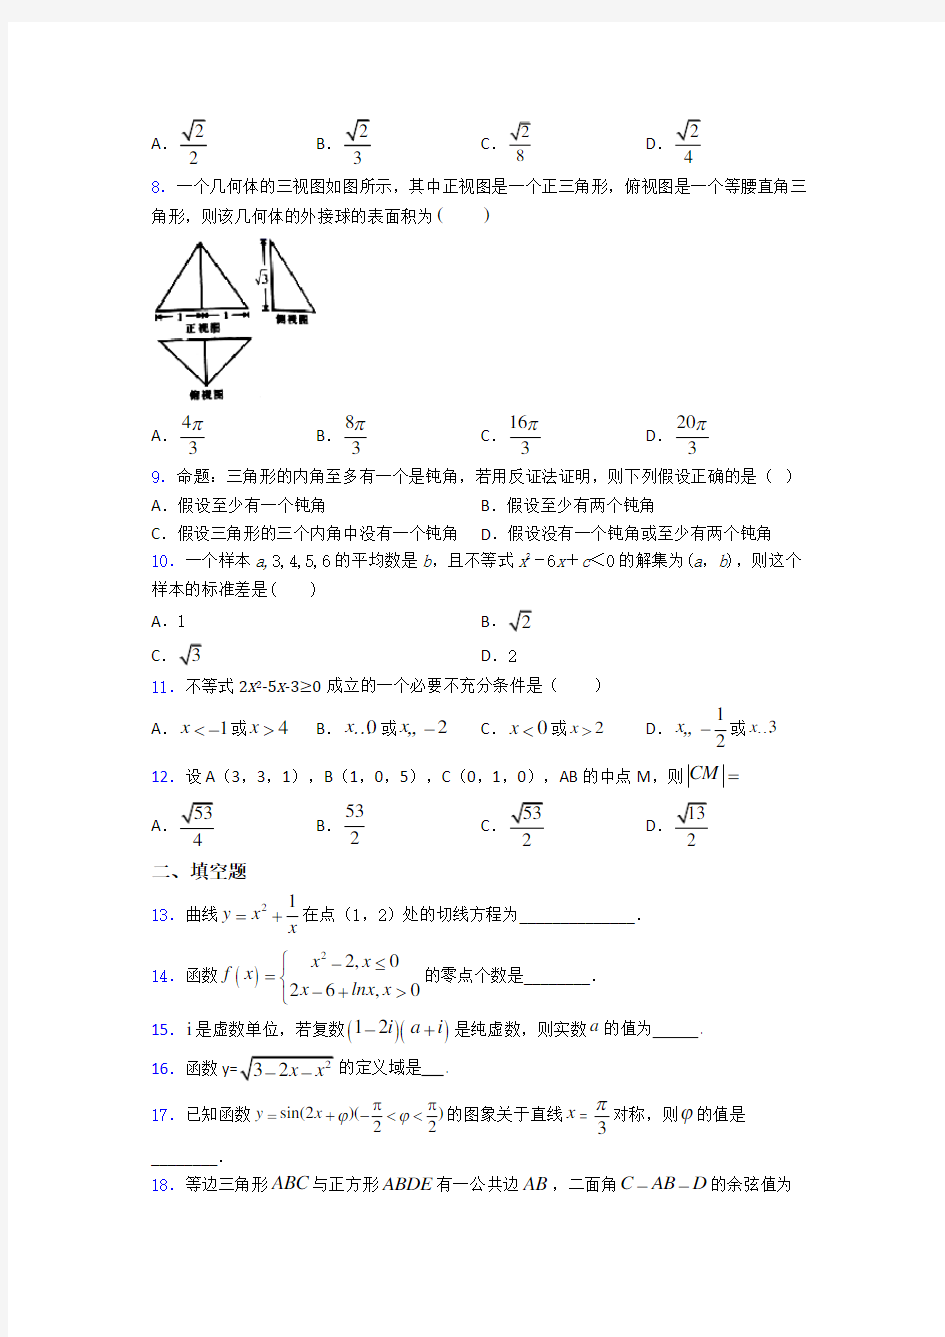 【必考题】高考数学第一次模拟试题及答案